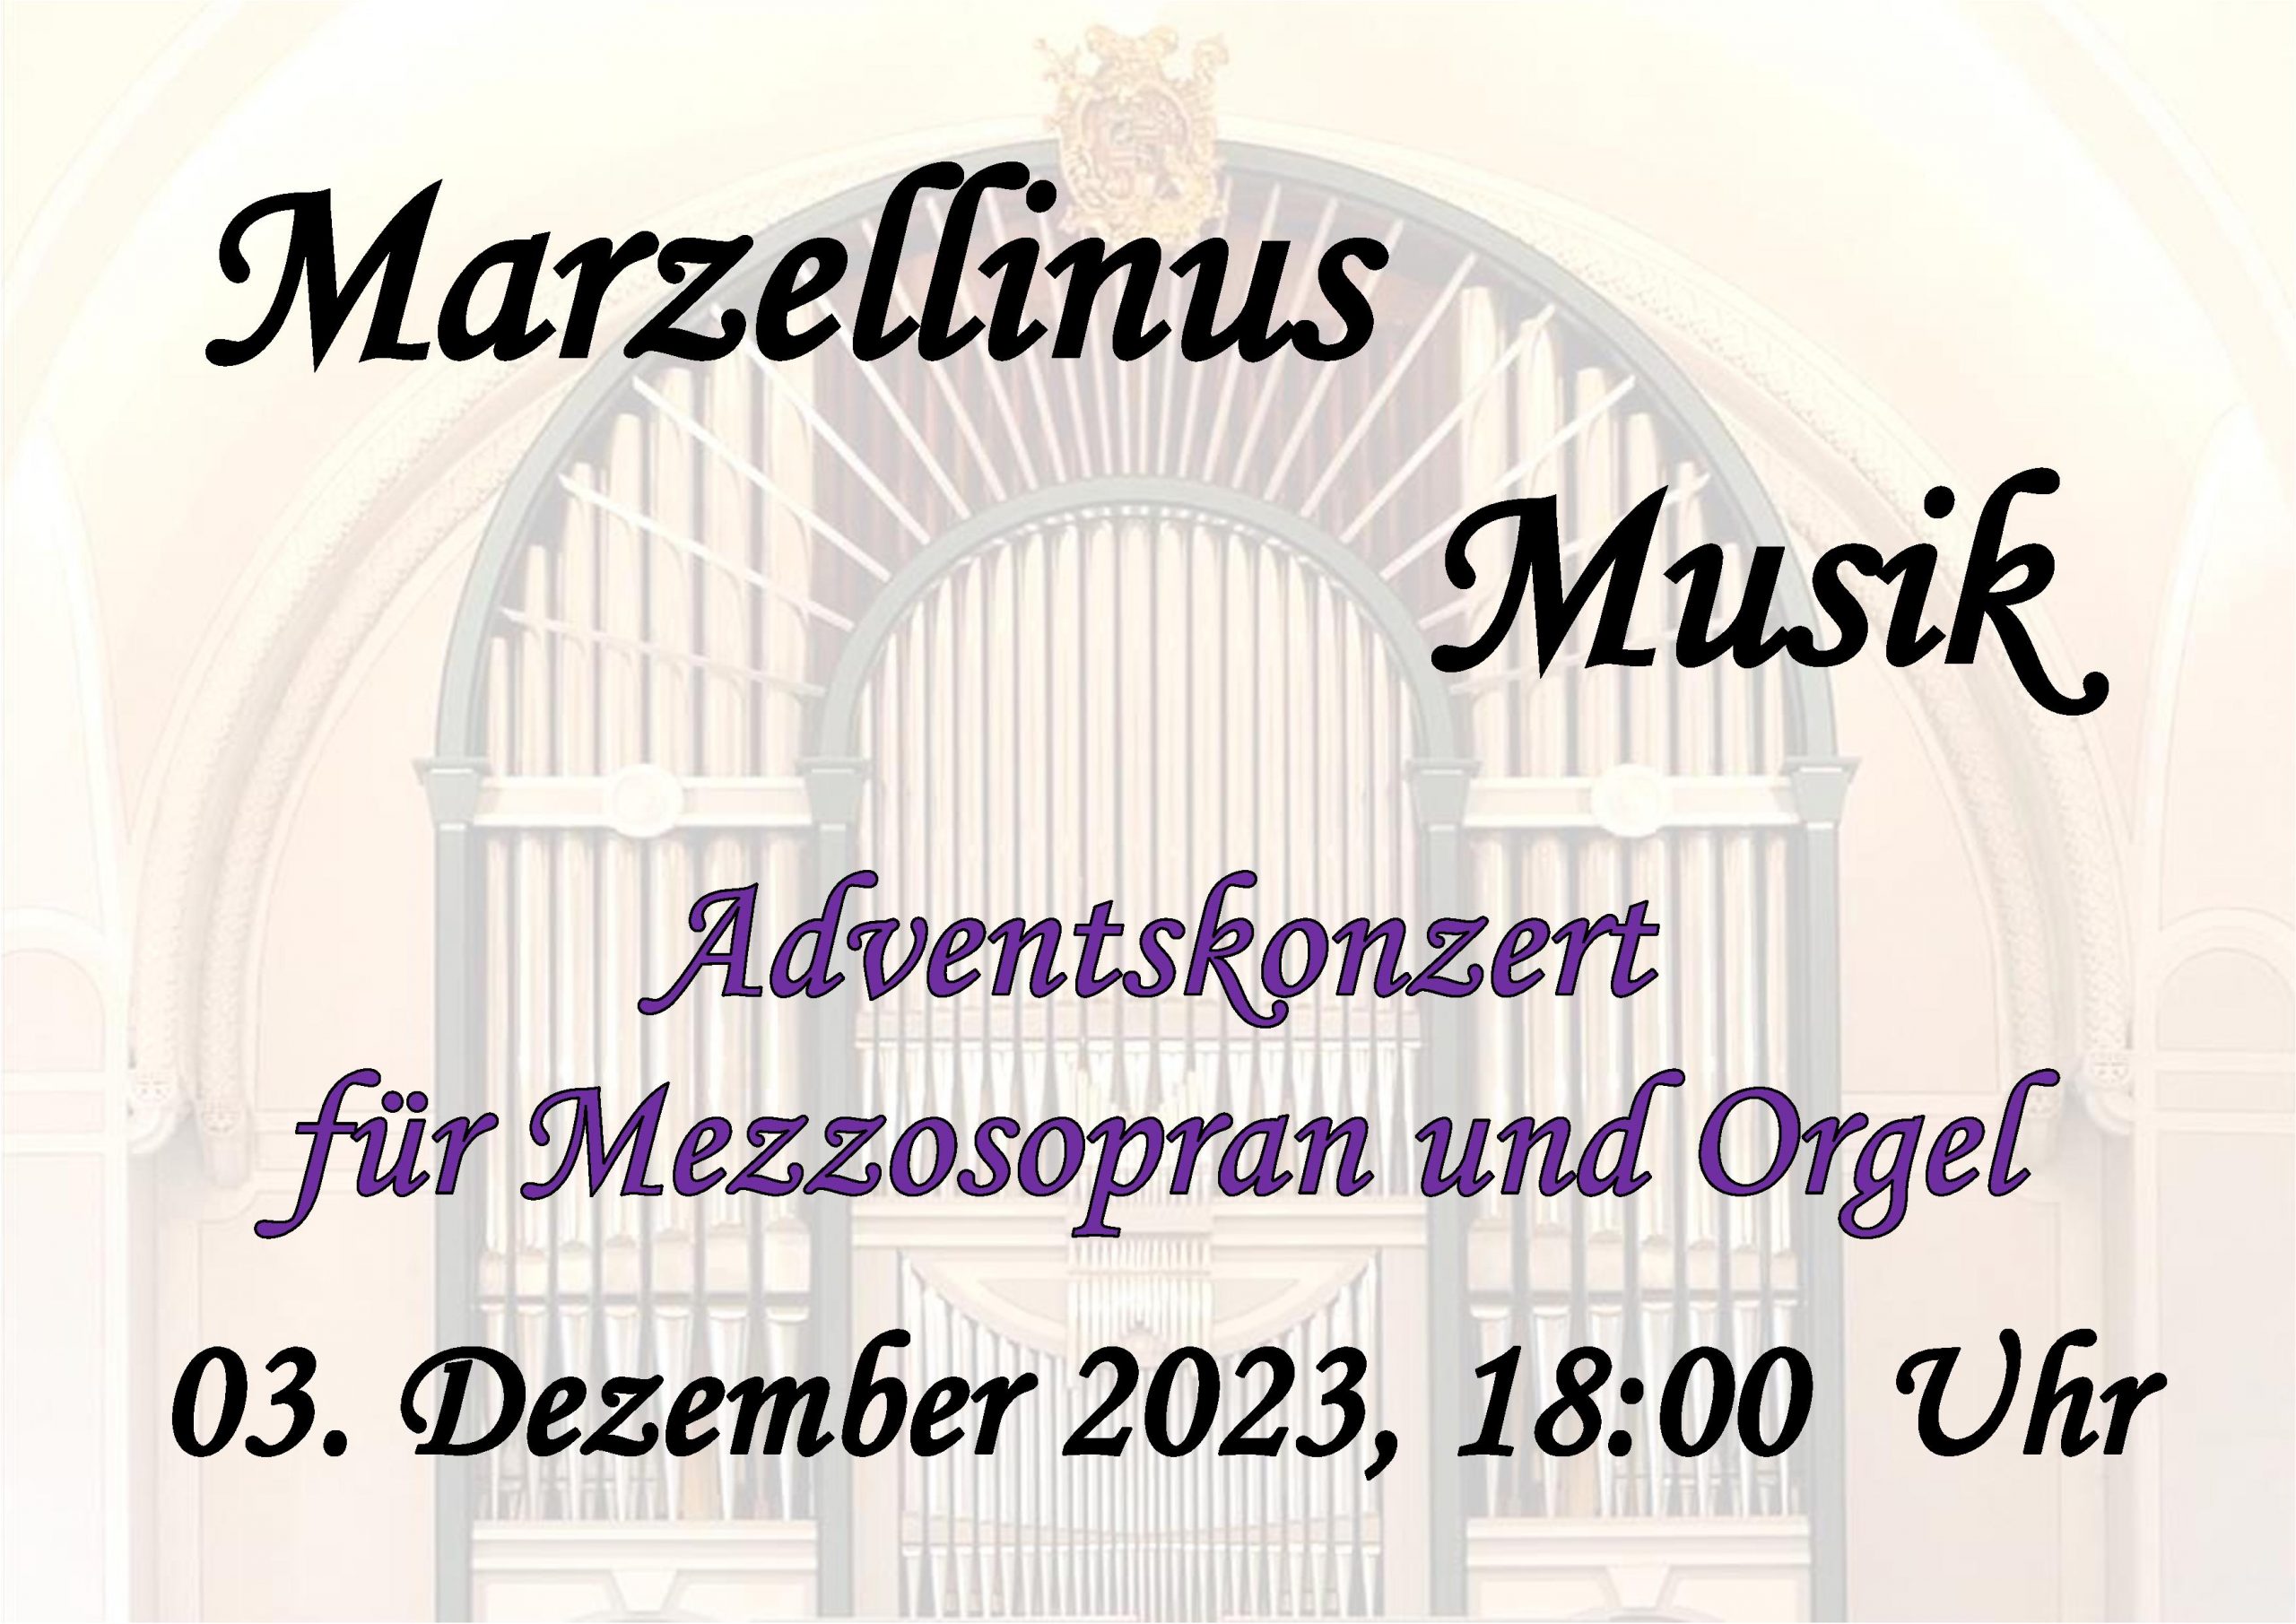 Marzellinusmusik im Advent (Teaser)